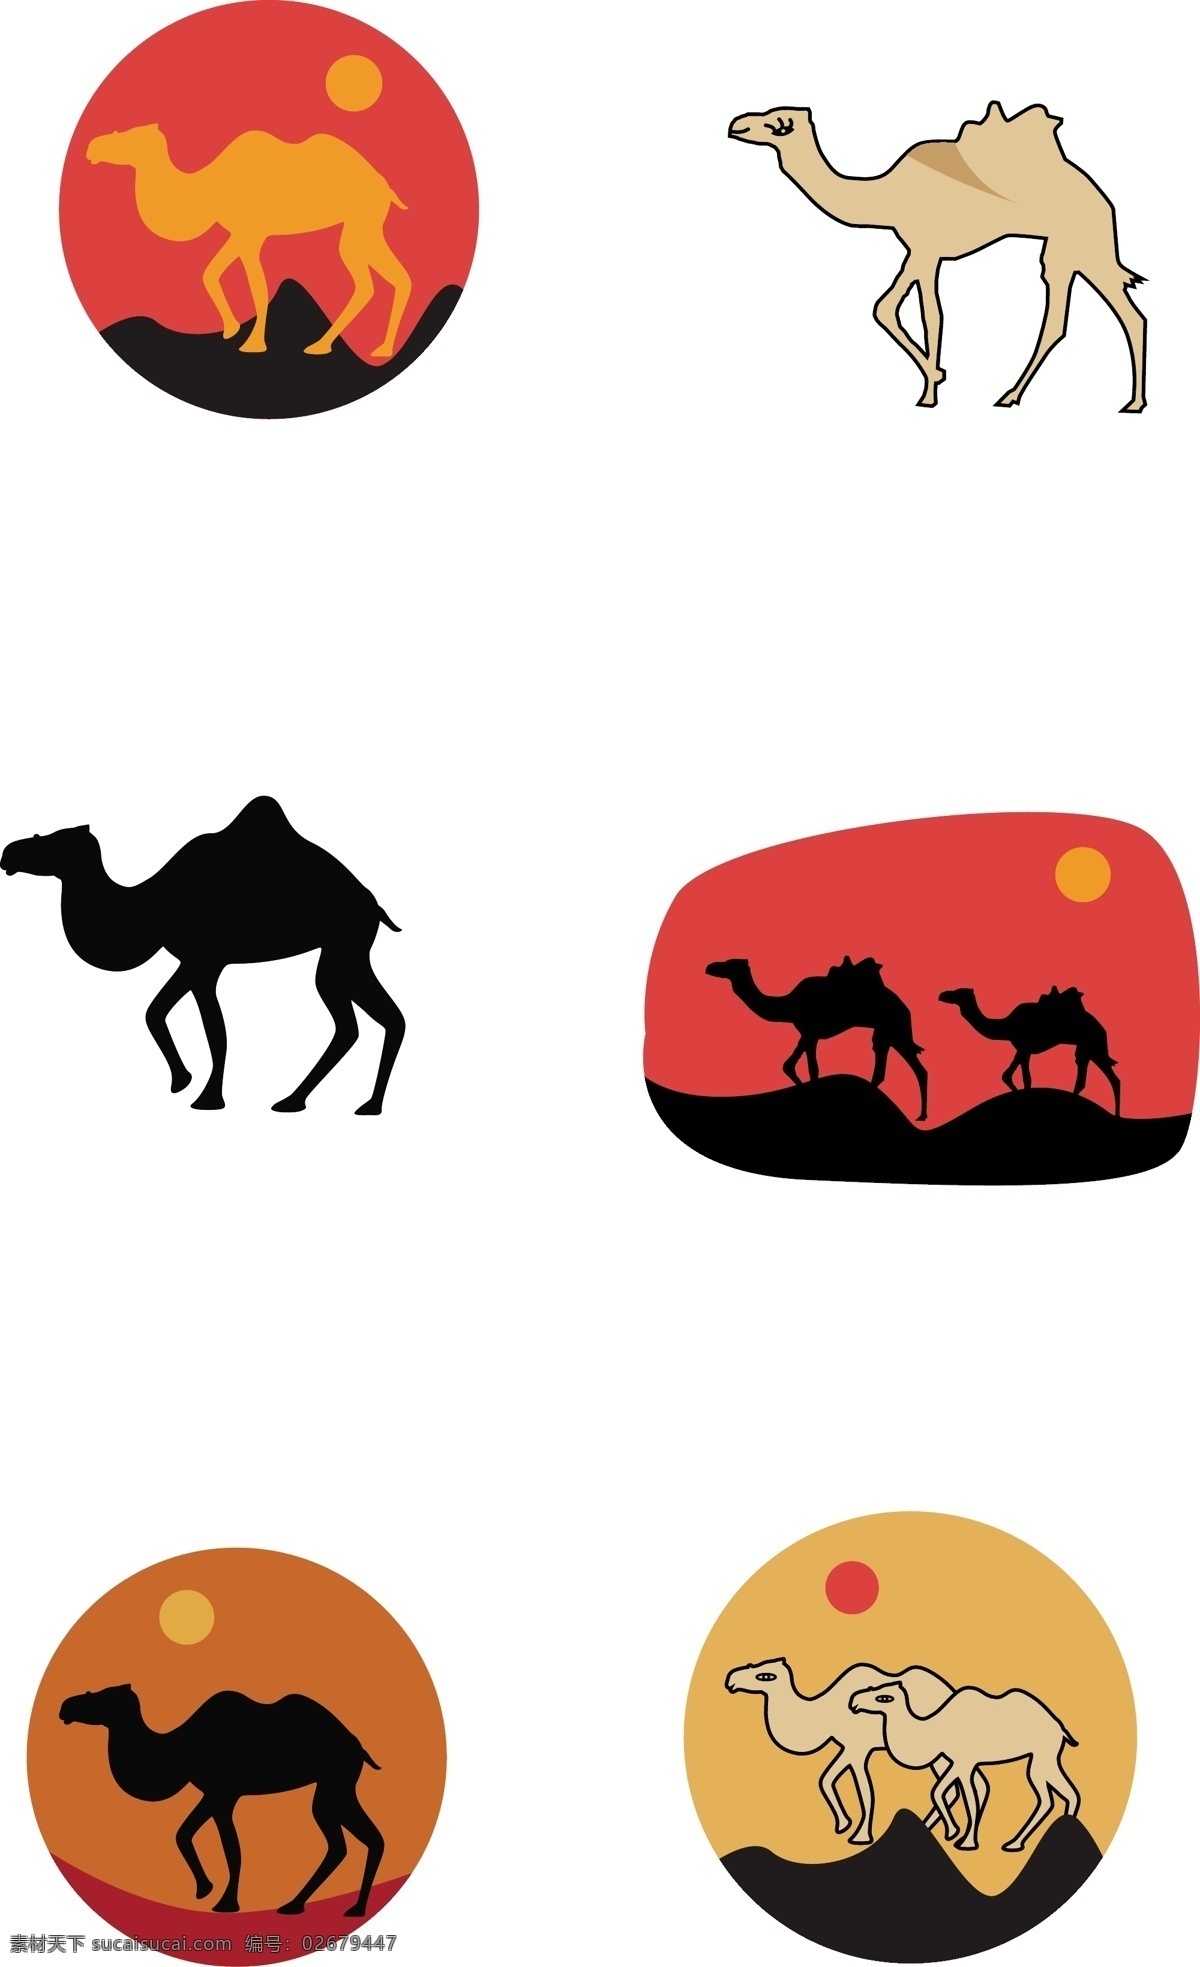 矢量 骆驼 图标 沙漠 沙漠骆驼 骆驼剪影 沙漠层叠 沙堆 沙丘 层次沙丘 落日余晖 落日 丝绸之路 企业文化背景 沙漠背景 沙漠场景 沙漠插画 ps插画 插画 动漫动画